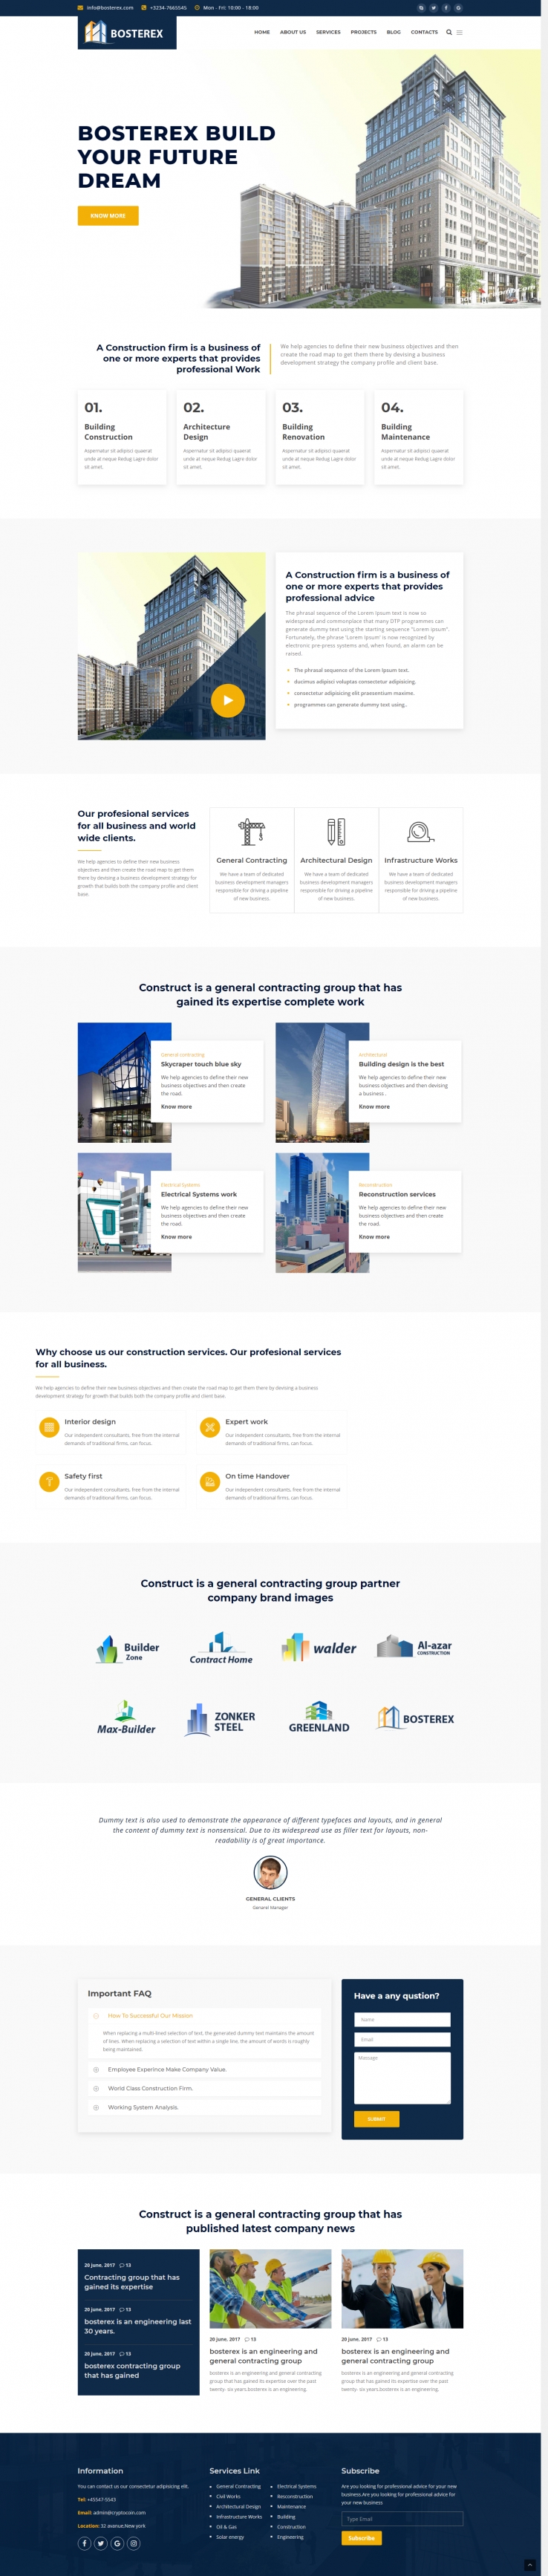 蓝色宽屏风格的建筑设计行业企业网站源码下载